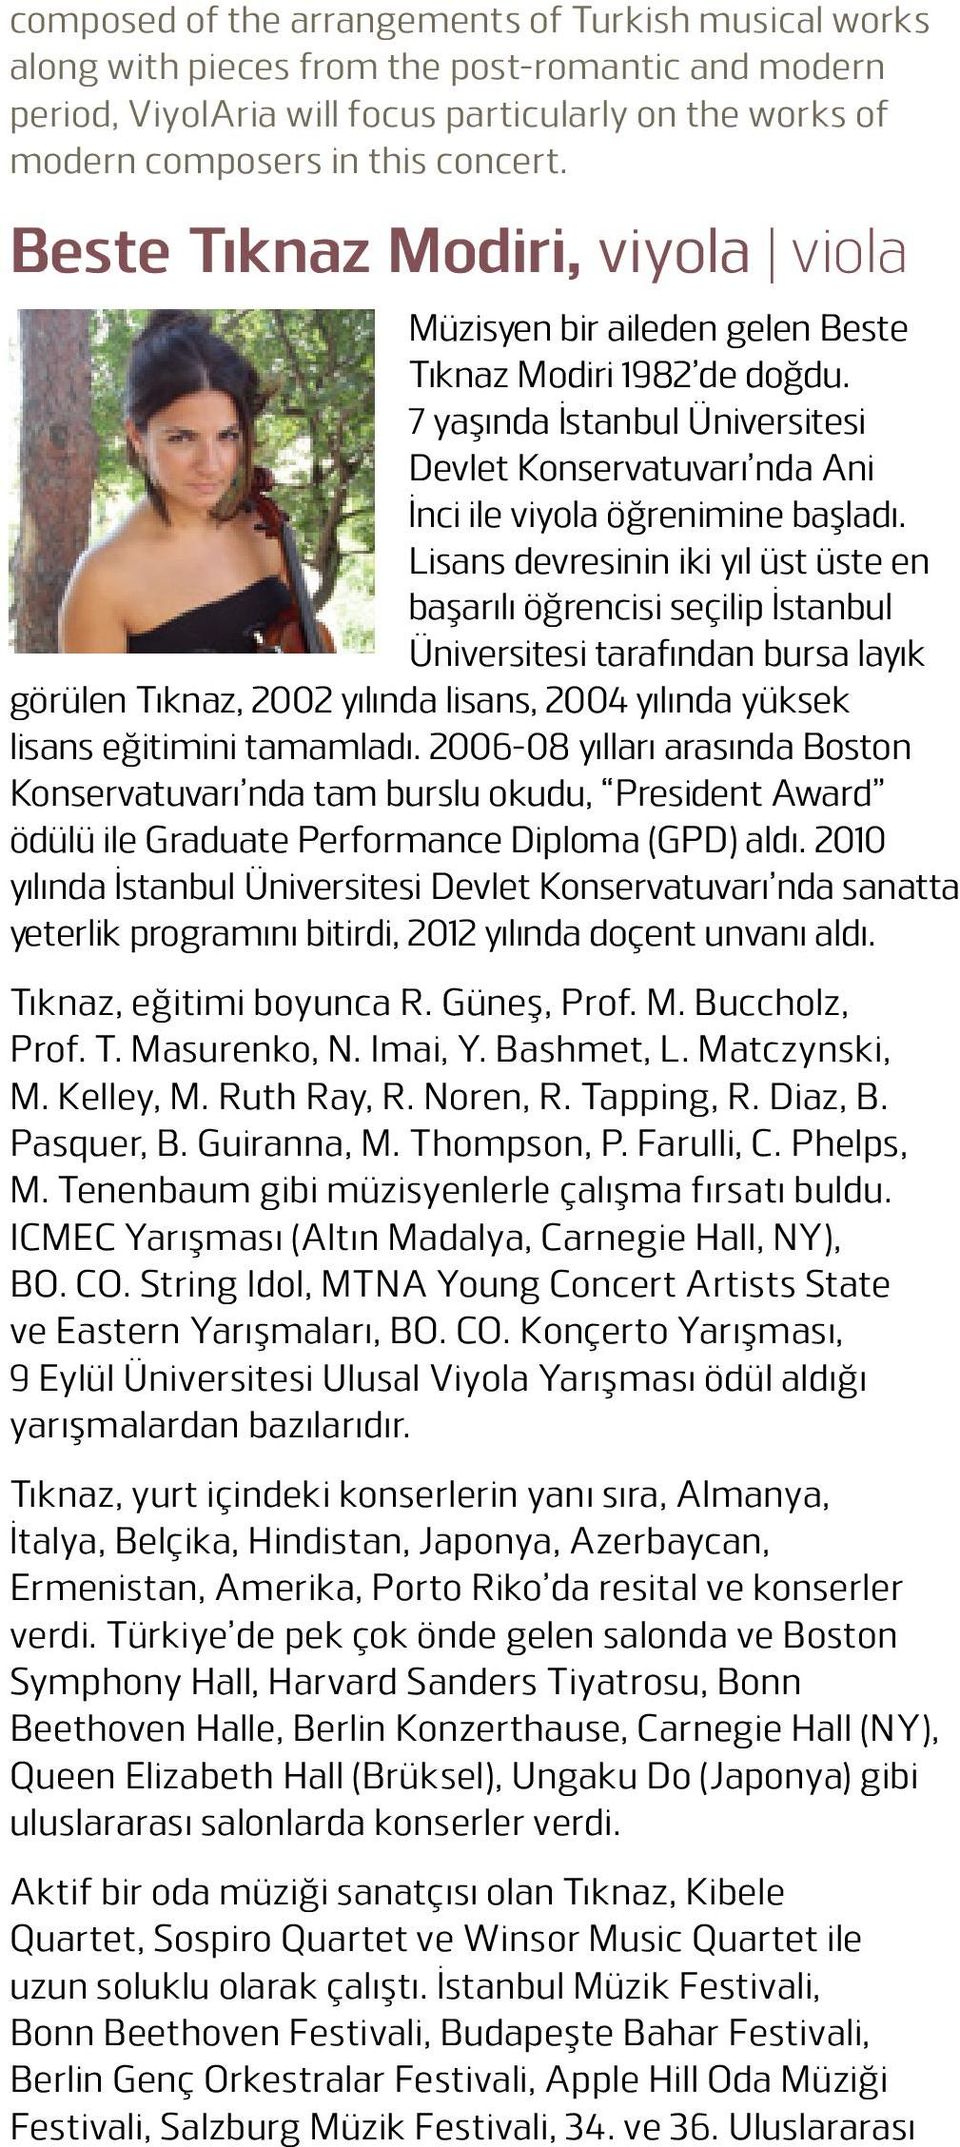 Lisans devresinin iki yıl üst üste en başarılı öğrencisi seçilip İstanbul Üniversitesi tarafından bursa layık görülen Tıknaz, 2002 yılında lisans, 2004 yılında yüksek lisans eğitimini tamamladı.